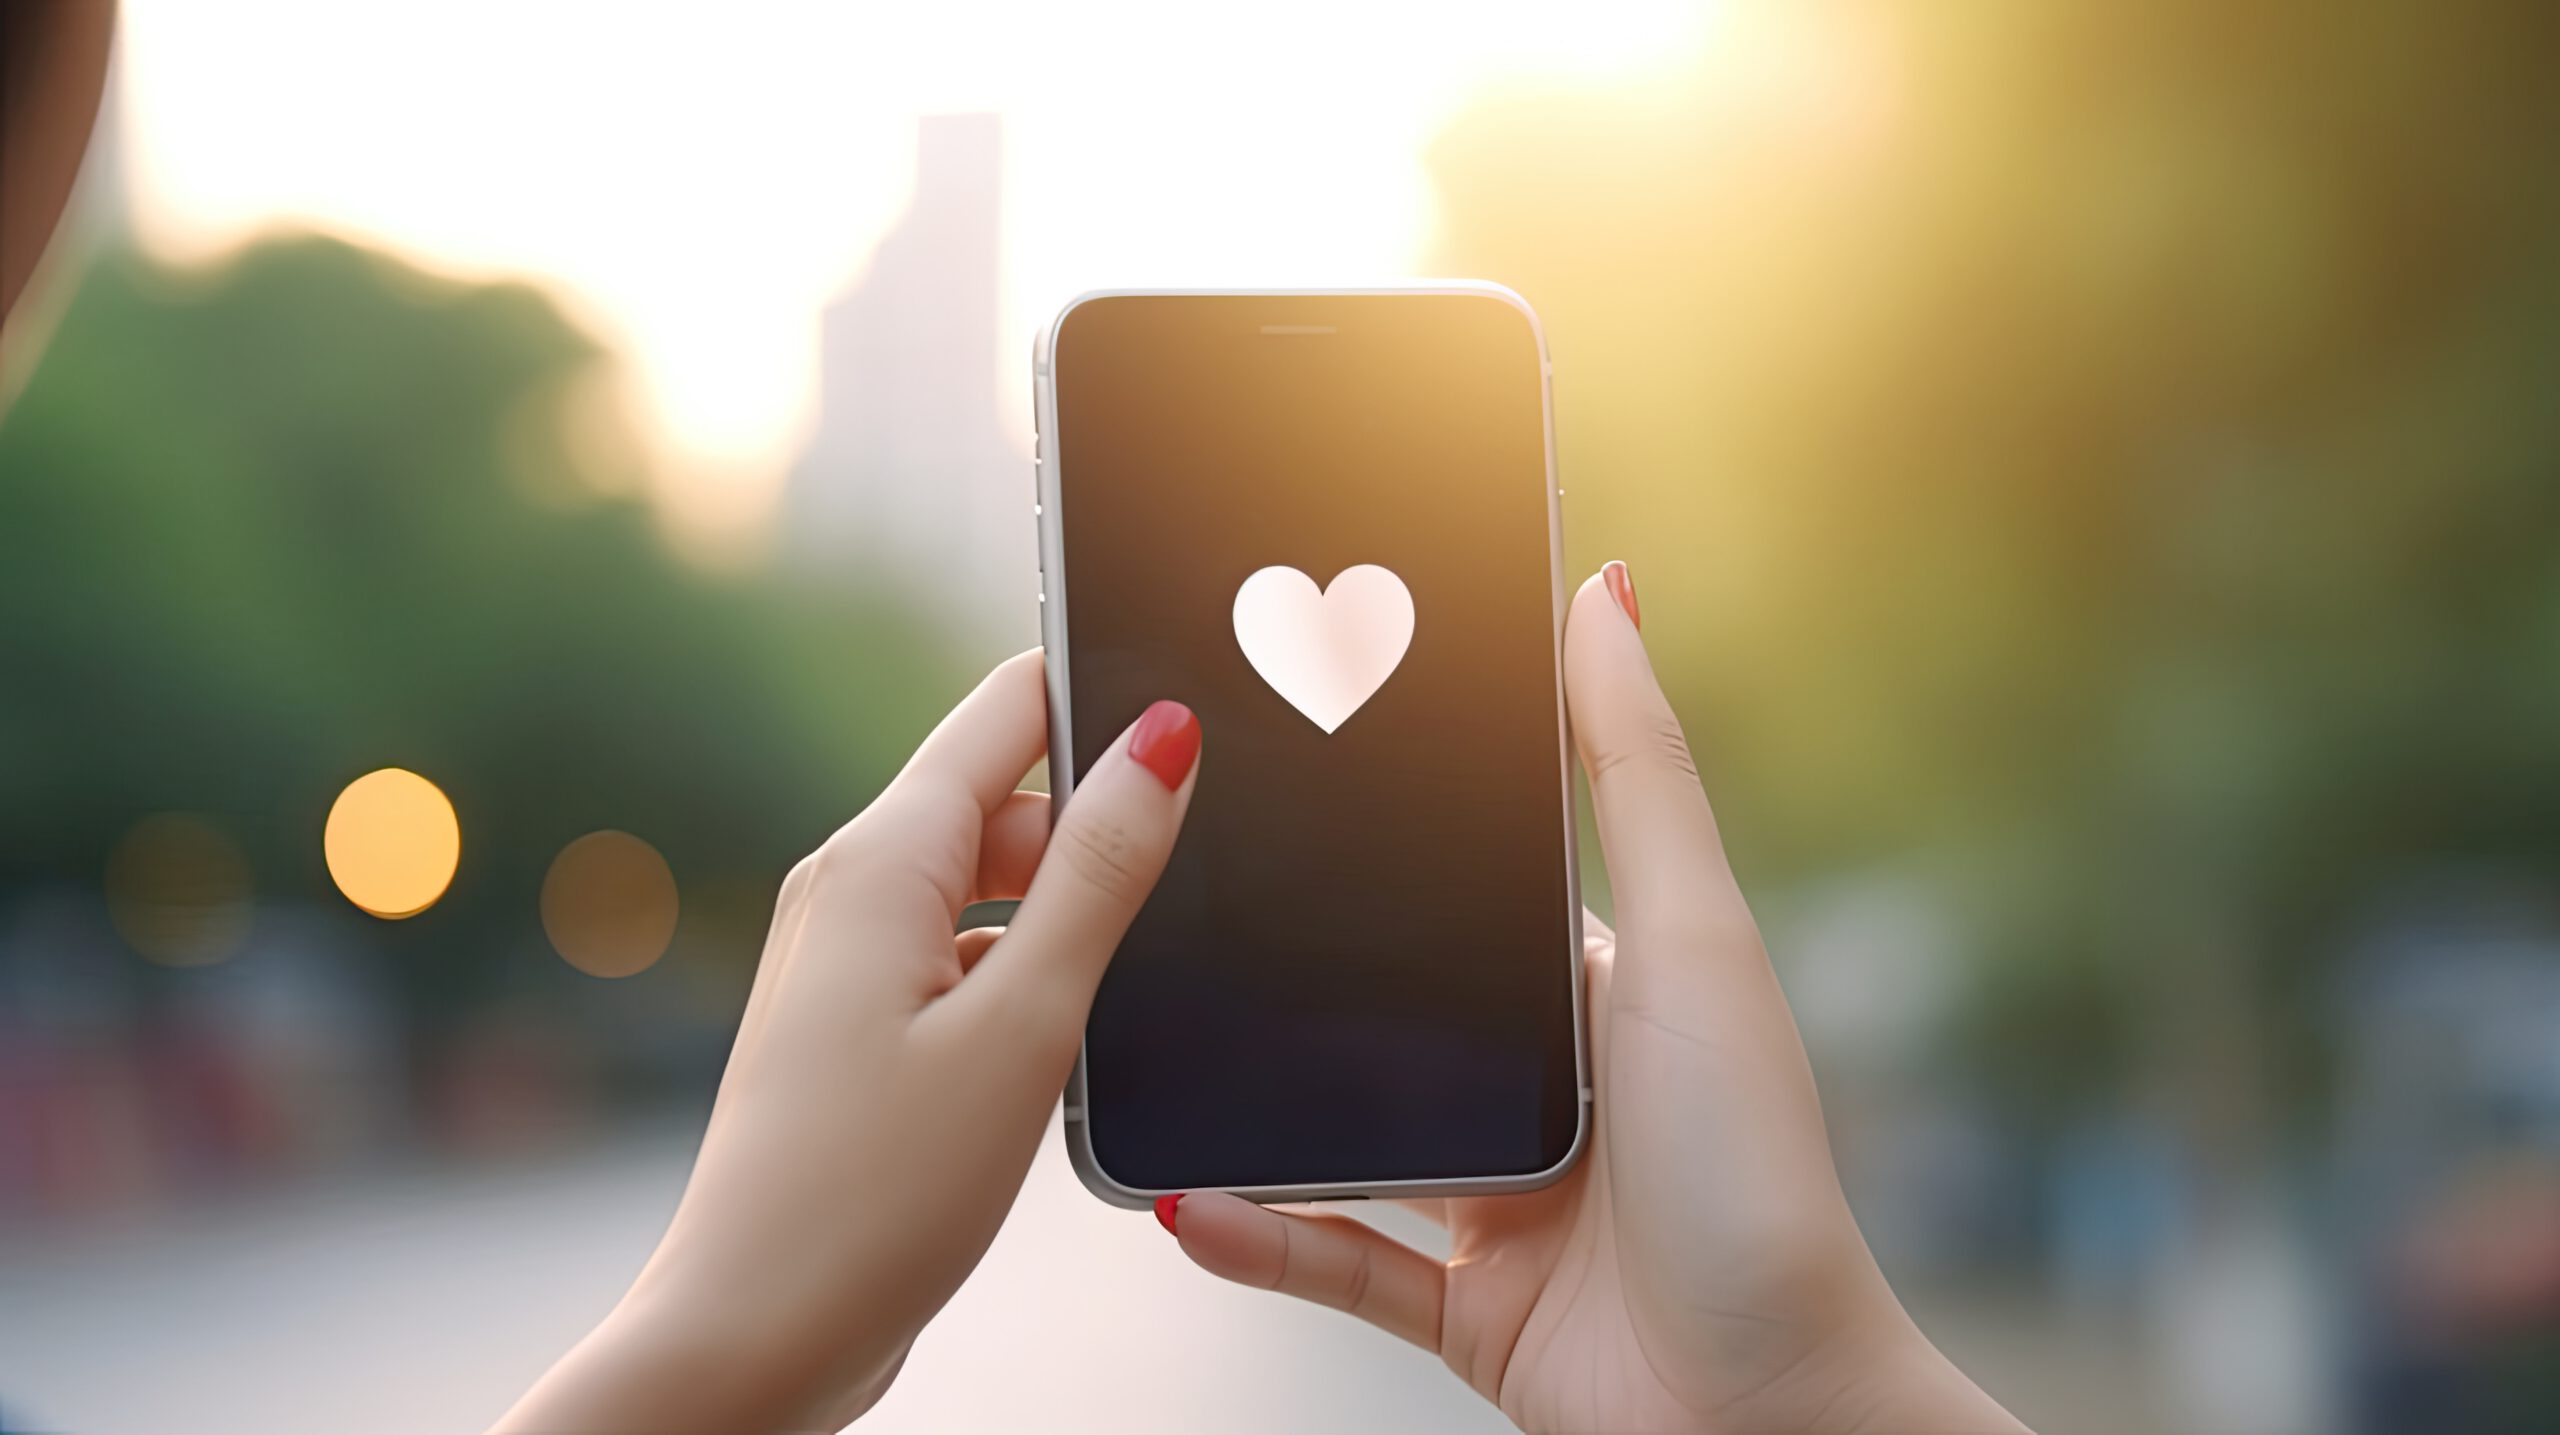 Na obrazku widoczna jest uśmiechnięta kobieta, korzystająca z aplikacji Tinder na swoim smartfonie. Wyraża ona entuzjazm i ciekawość, przeglądając różne profile i możliwości nawiązania nowych romantycznych połączeń za pomocą popularnej platformy randkowej.